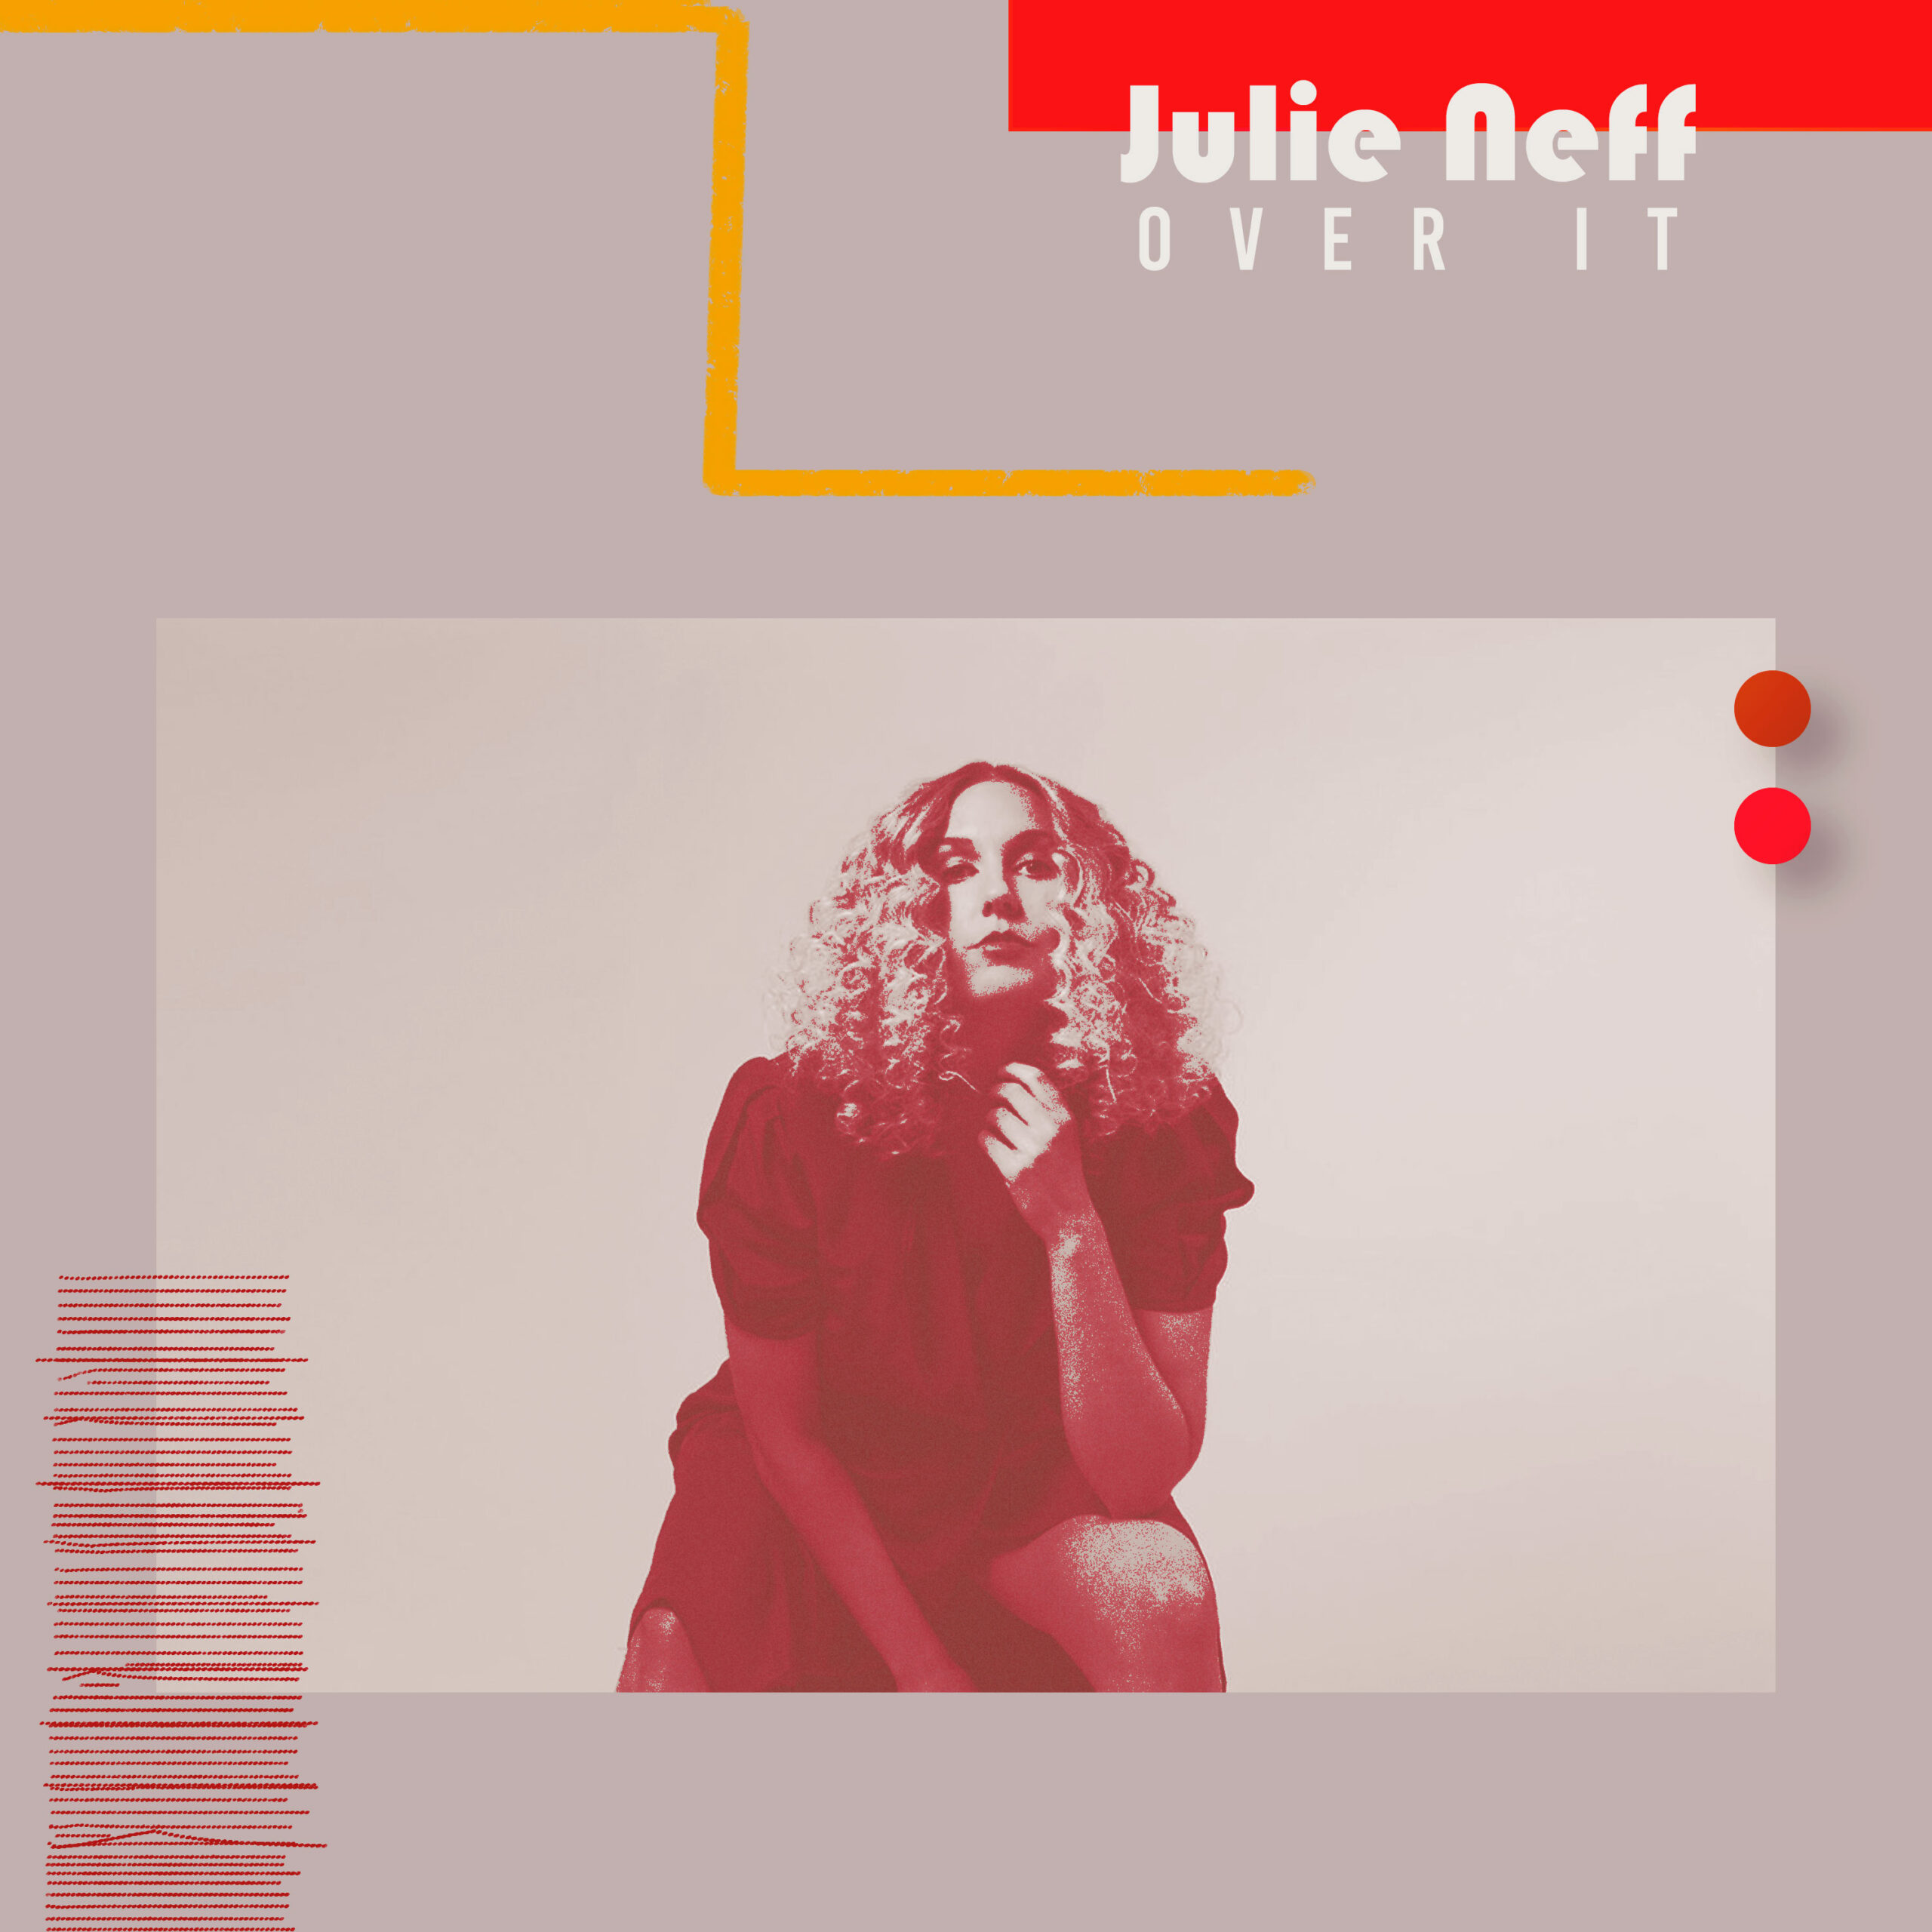 Read more about the article Julie Neff: artista canadense de conexões brasileiras lança seu segundo EP “Over It”